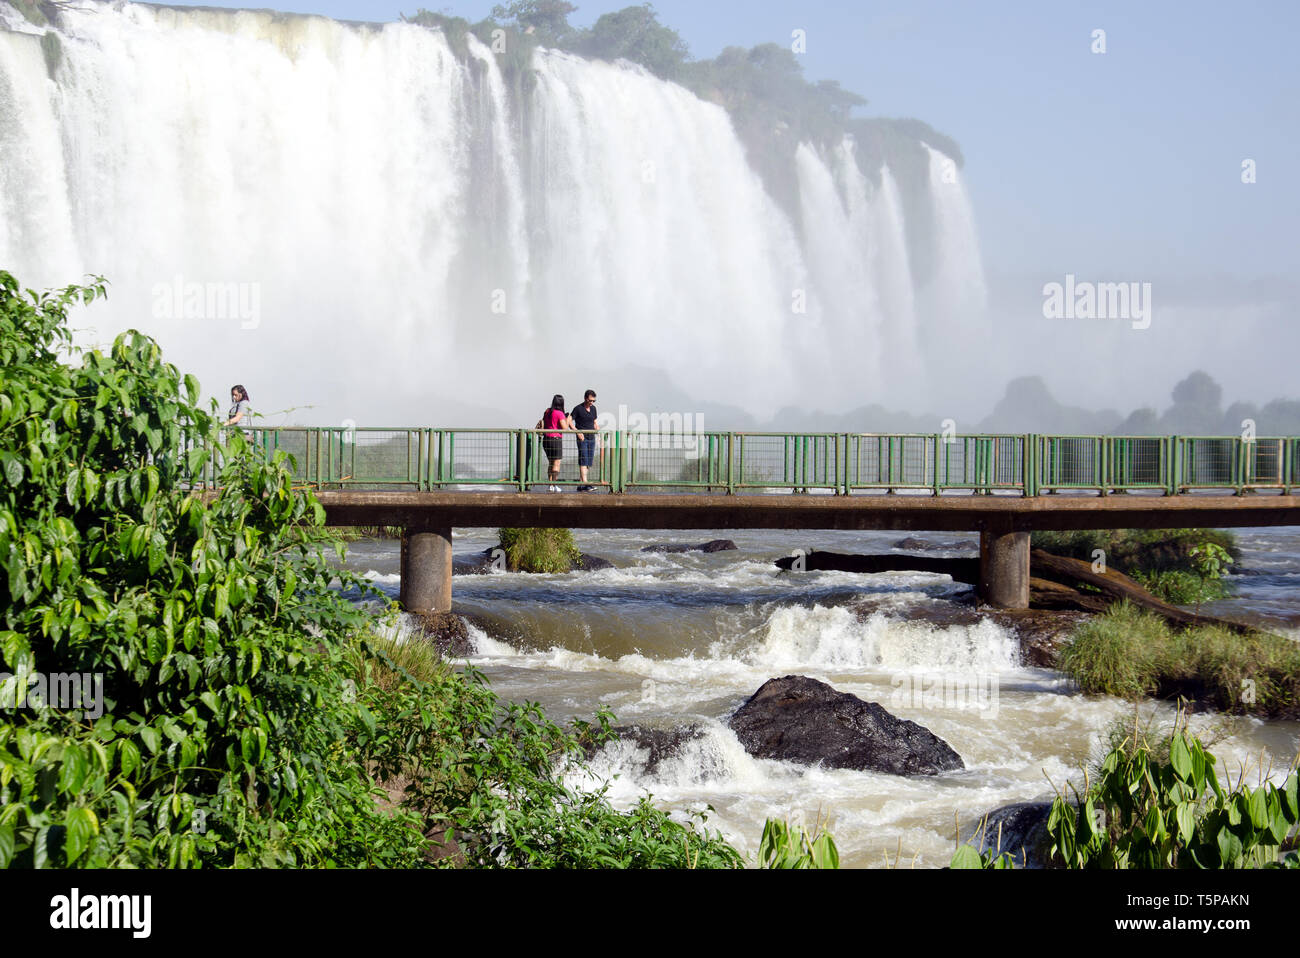 Una impresionante vista de las imponentes Cataratas de Iguazú desde el lado brasileño Foto de stock